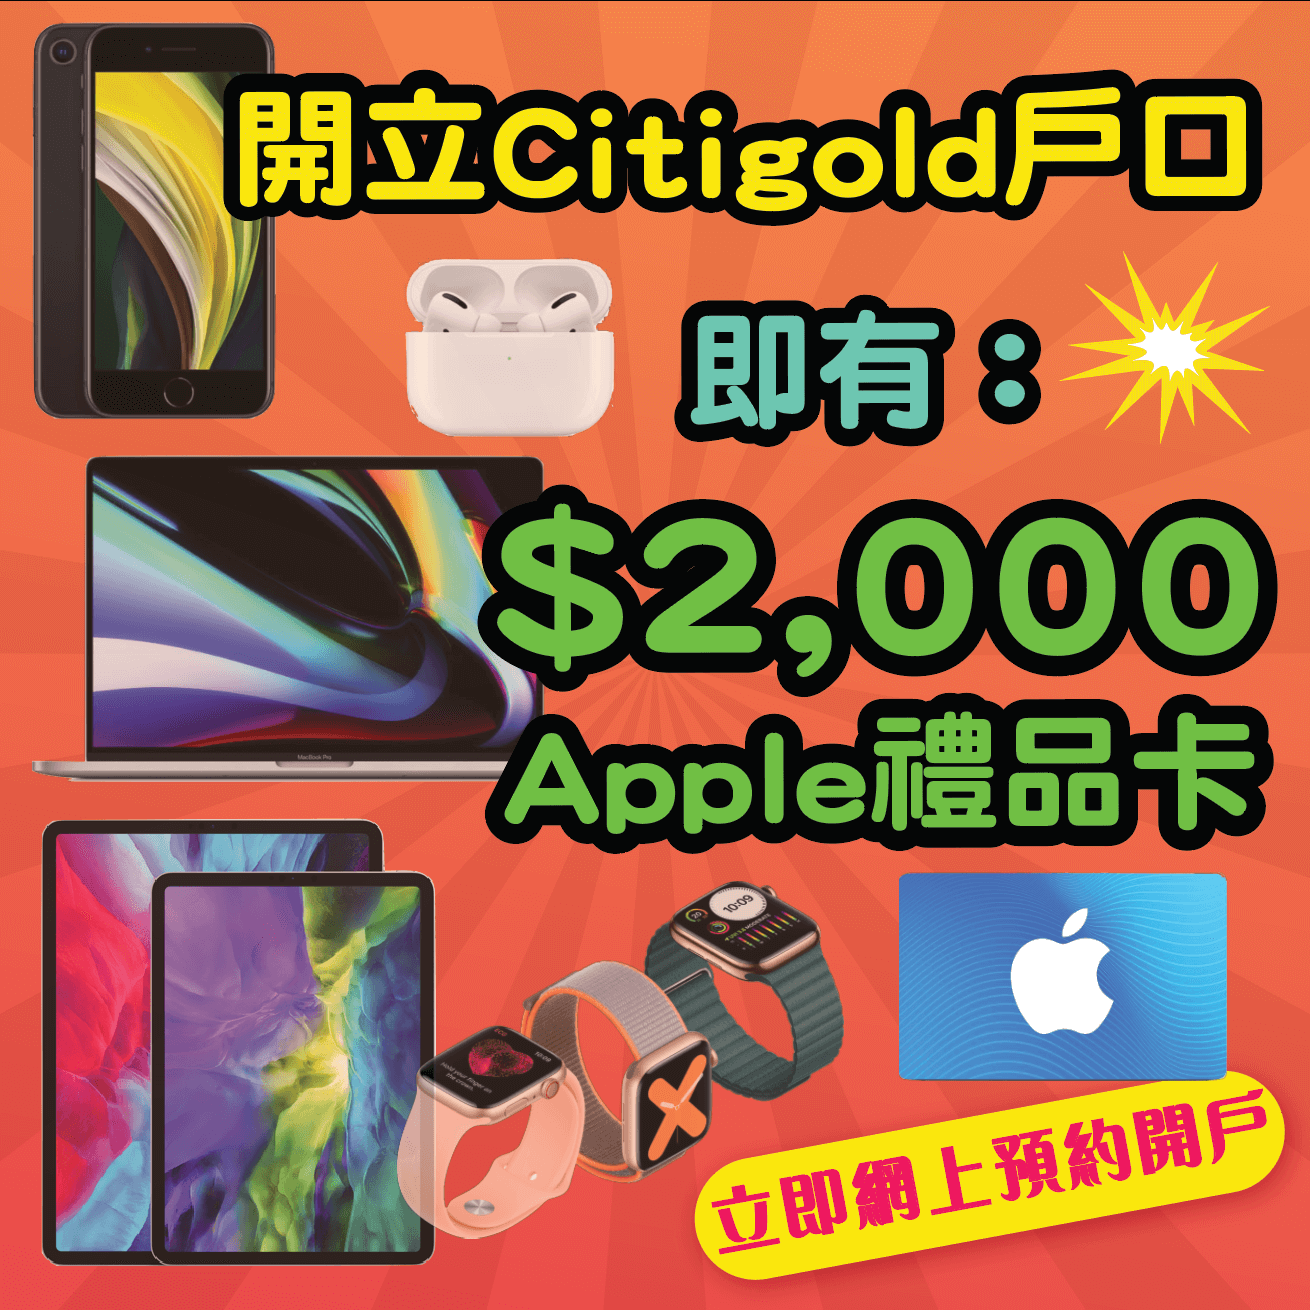 【開戶即有額外$2,000 Apple Gift Card】10月31日或之前經小斯申請Citigold有額外$2,000 Apple Gift Card！開戶仲有高達$38,800獎賞！